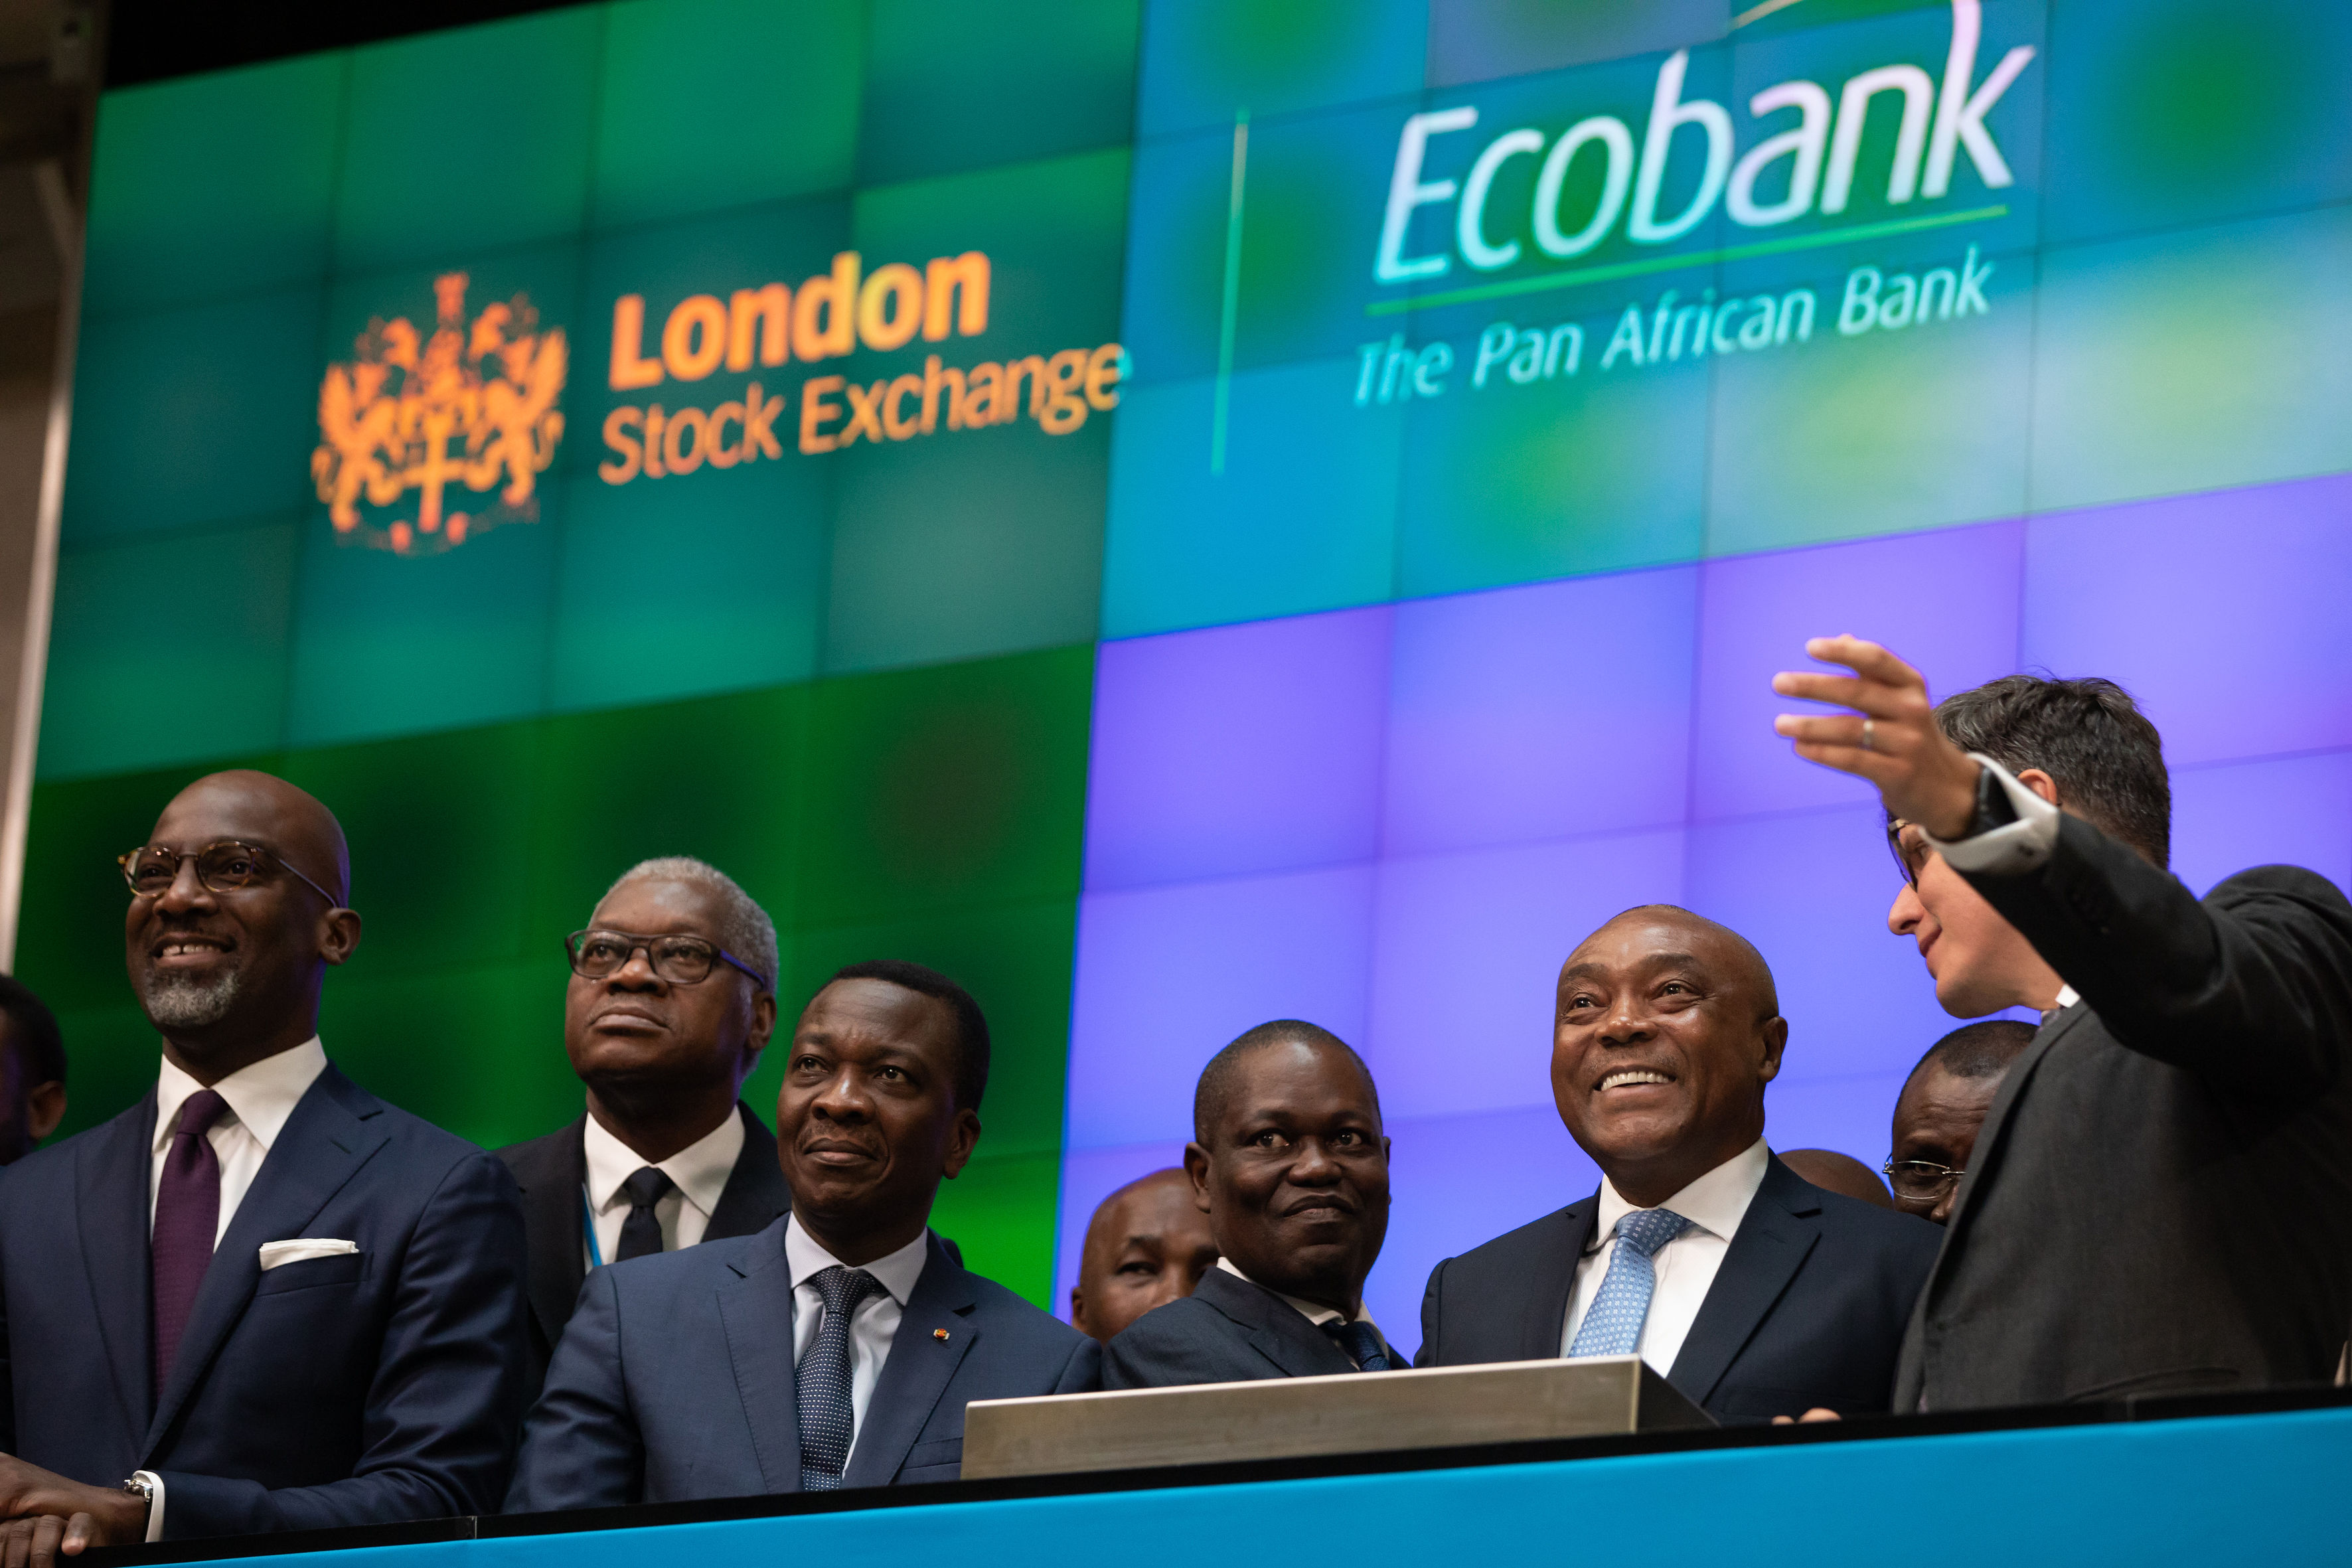 London Stock Exchange- Ecobank Transnatonal